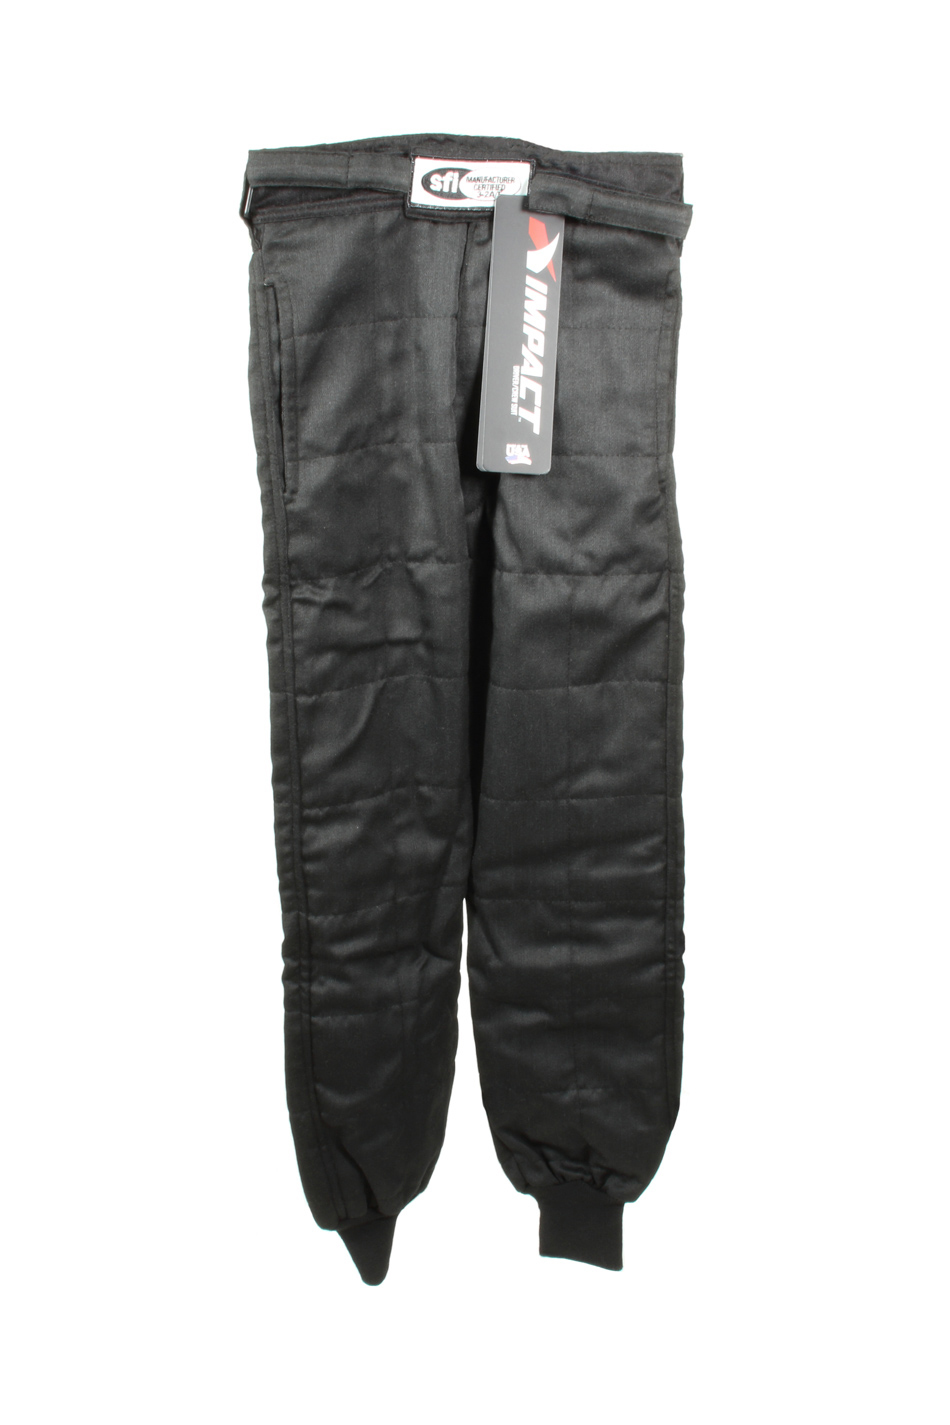 Impact Racing 22900510 - Suit Qtr Midget Pants Large